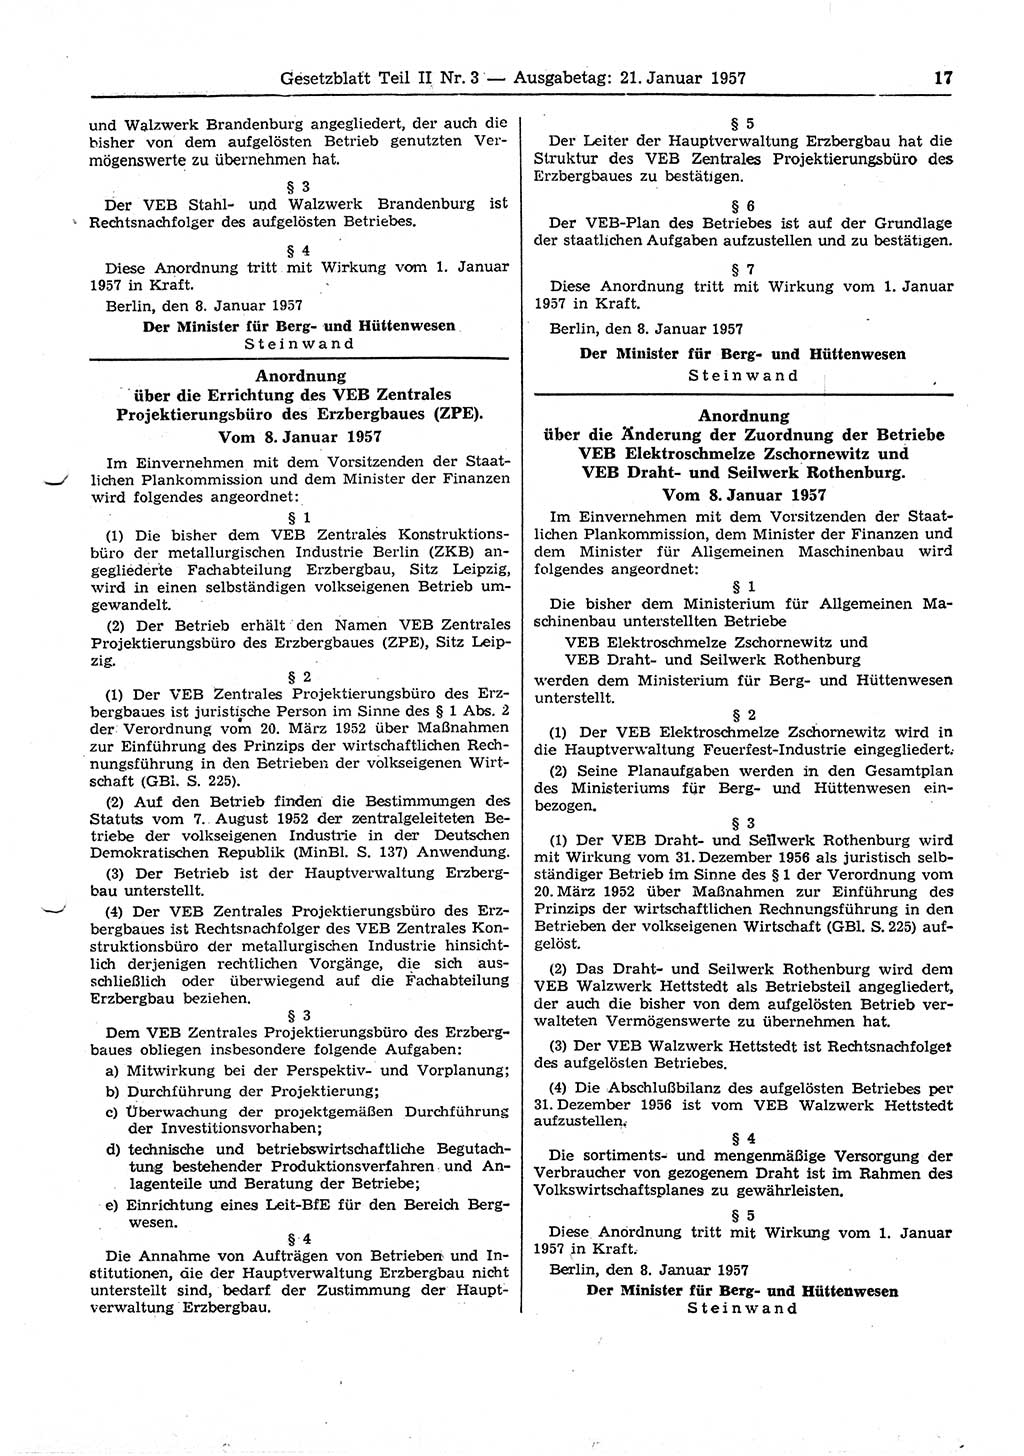 Gesetzblatt (GBl.) der Deutschen Demokratischen Republik (DDR) Teil ⅠⅠ 1957, Seite 17 (GBl. DDR ⅠⅠ 1957, S. 17)